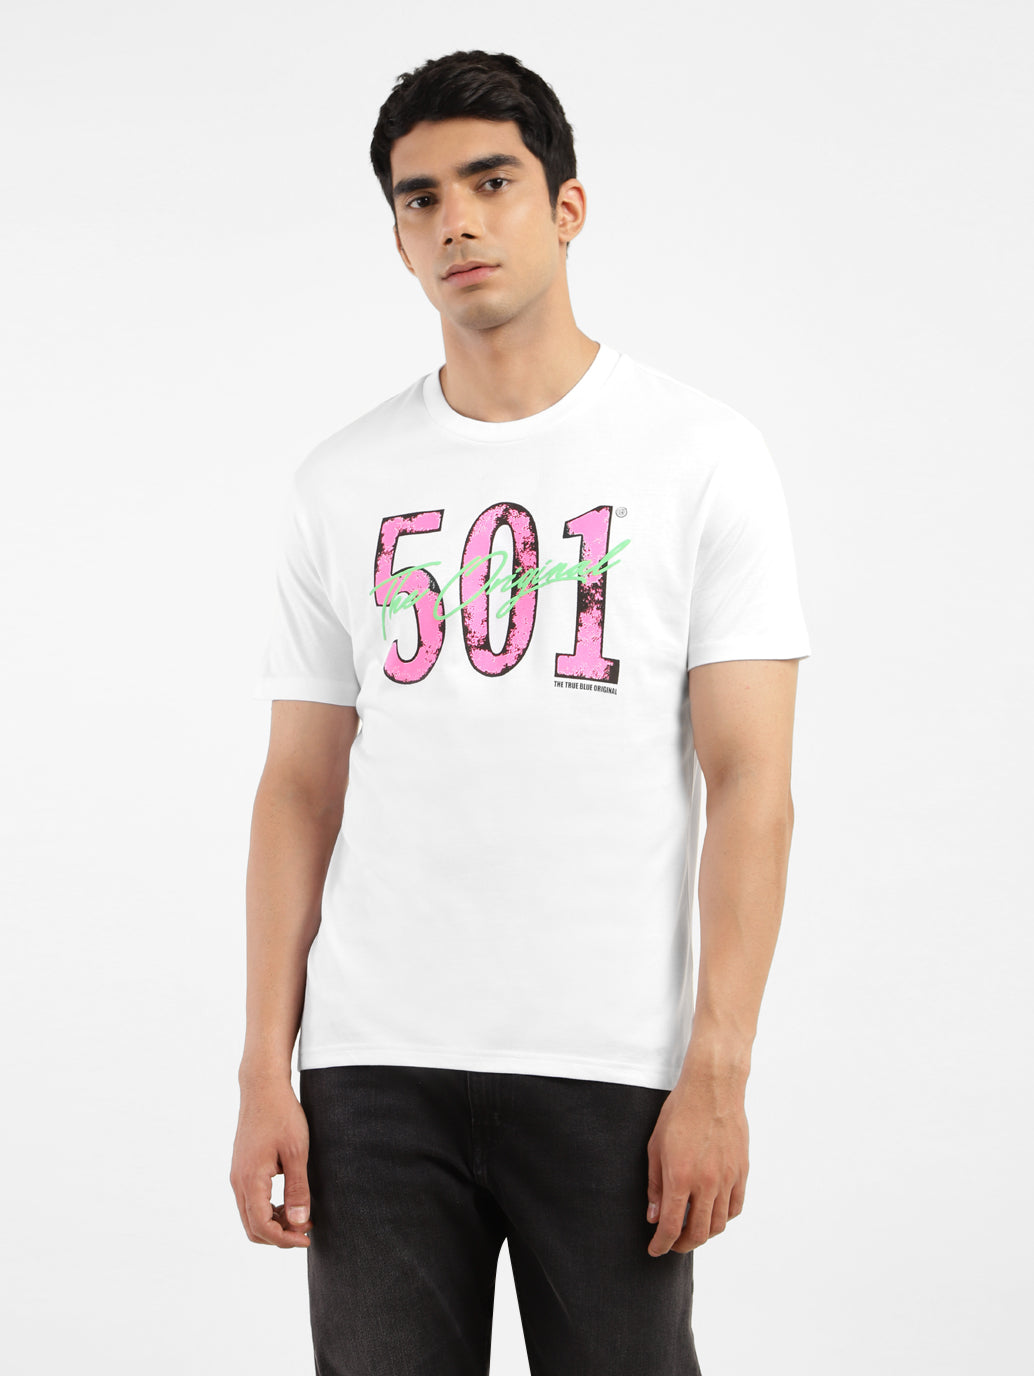 Men's Printed Slim Fit T-shirt